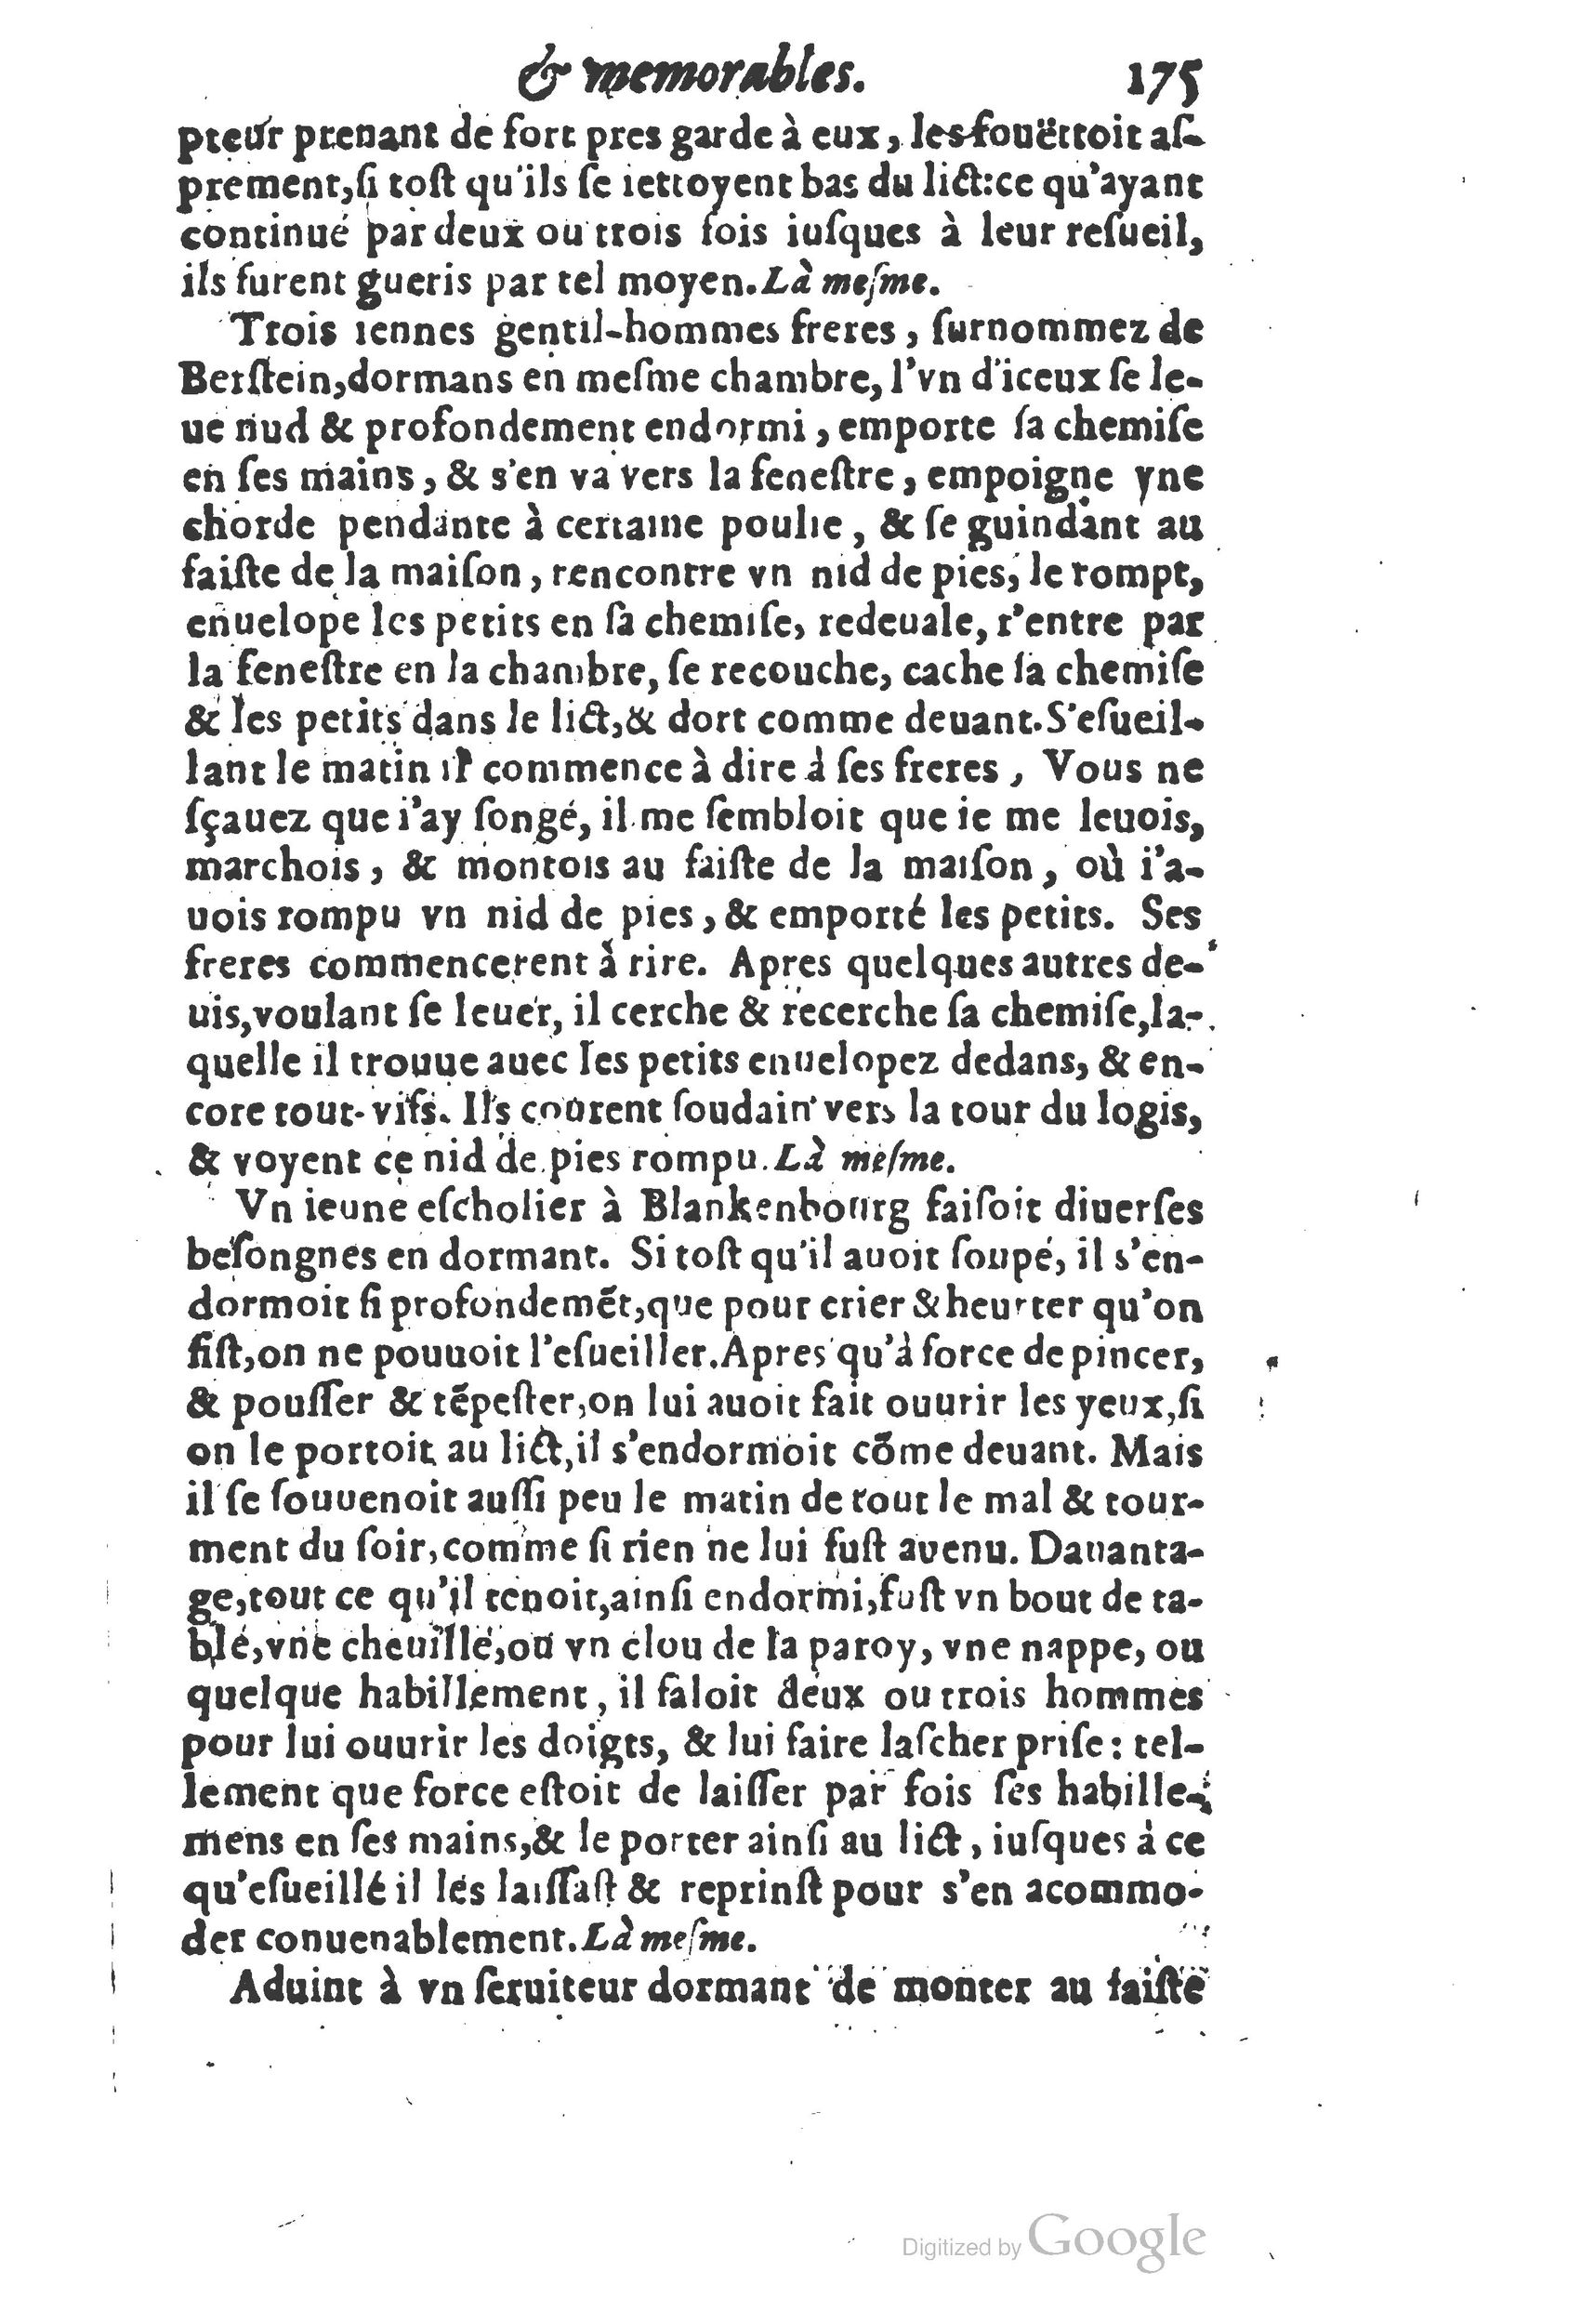 1610 Trésor d’histoires admirables et mémorables de nostre temps Marceau Princeton_Page_0196.jpg